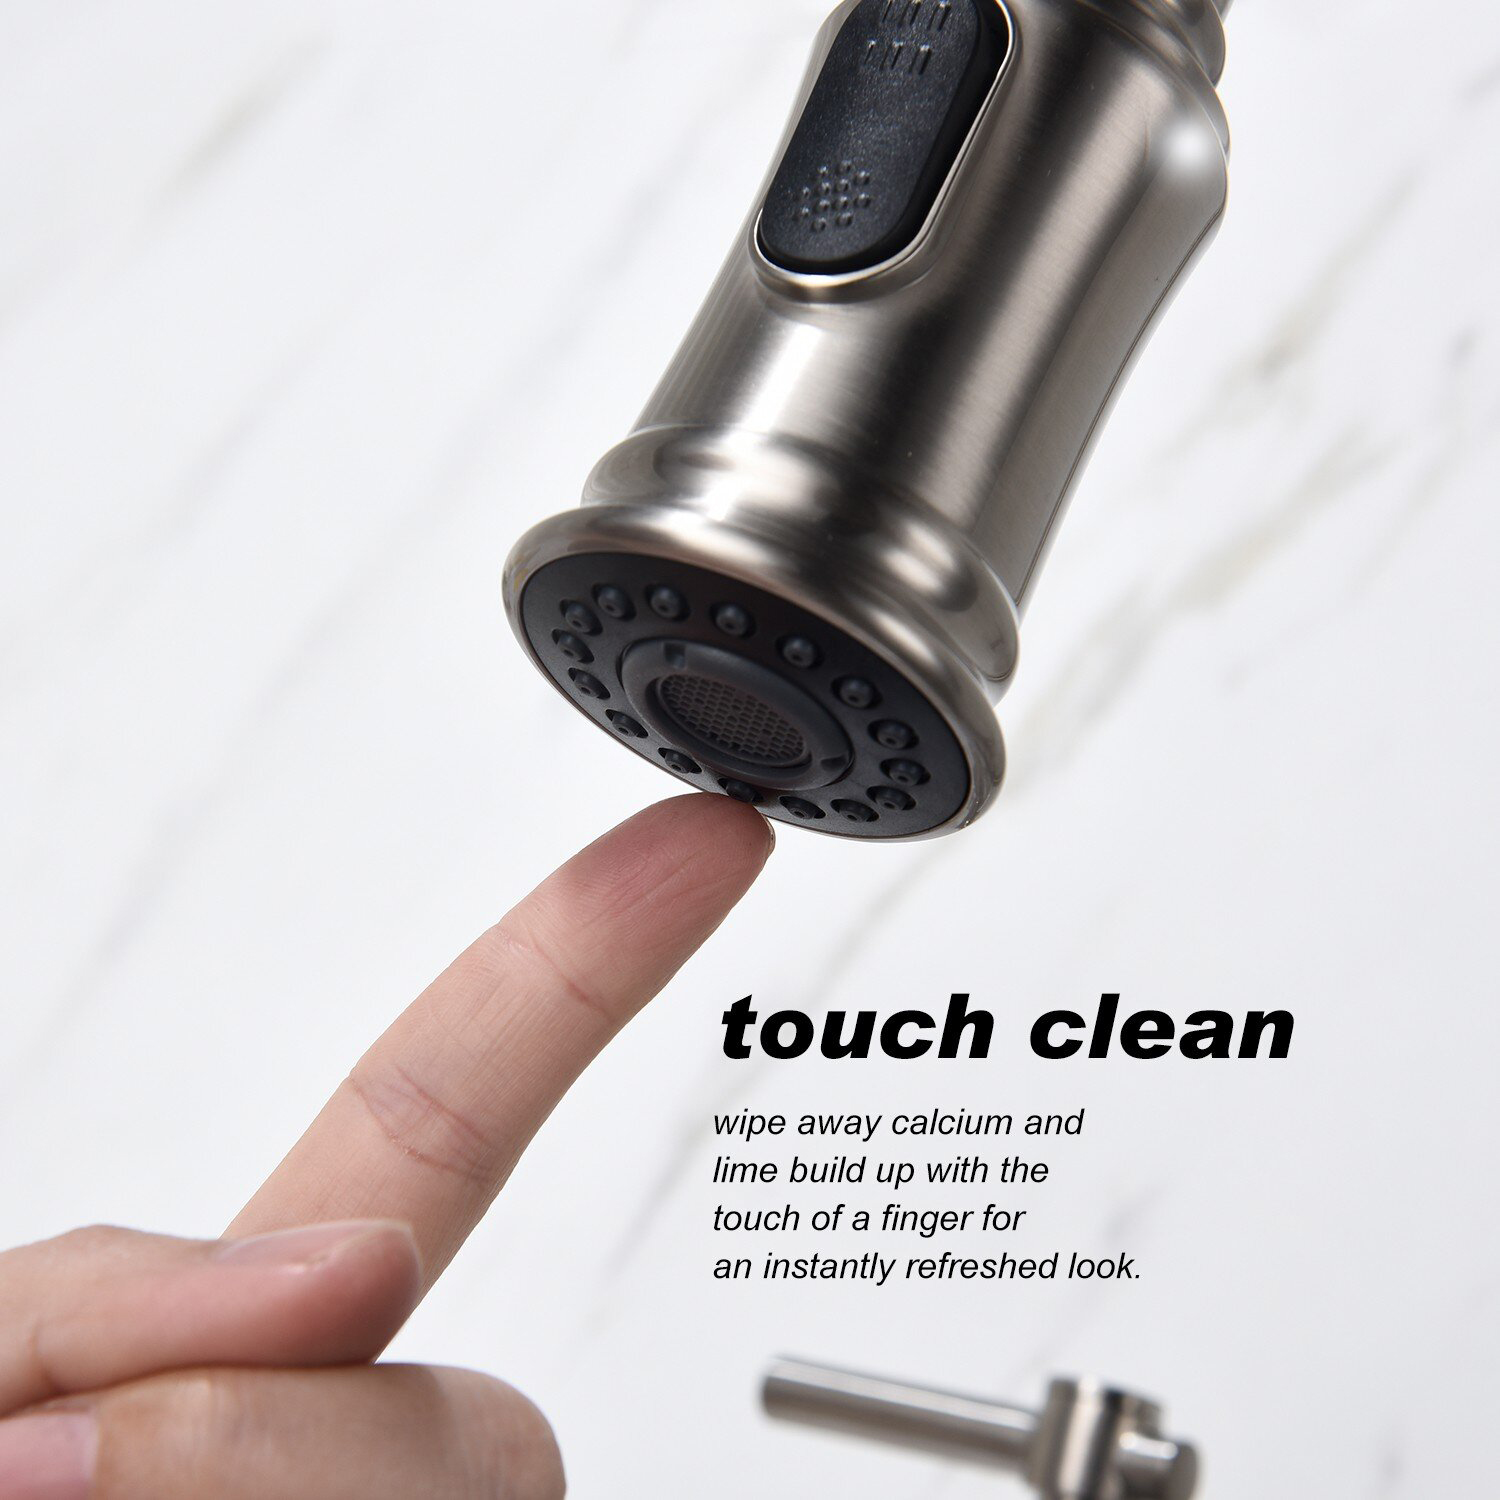 Bridge Kitchen Faucet with Pull-Down Sprayer Matte Black 3 Hole Kitchen Sink Faucet, Fingerprint Resistant Spot Free